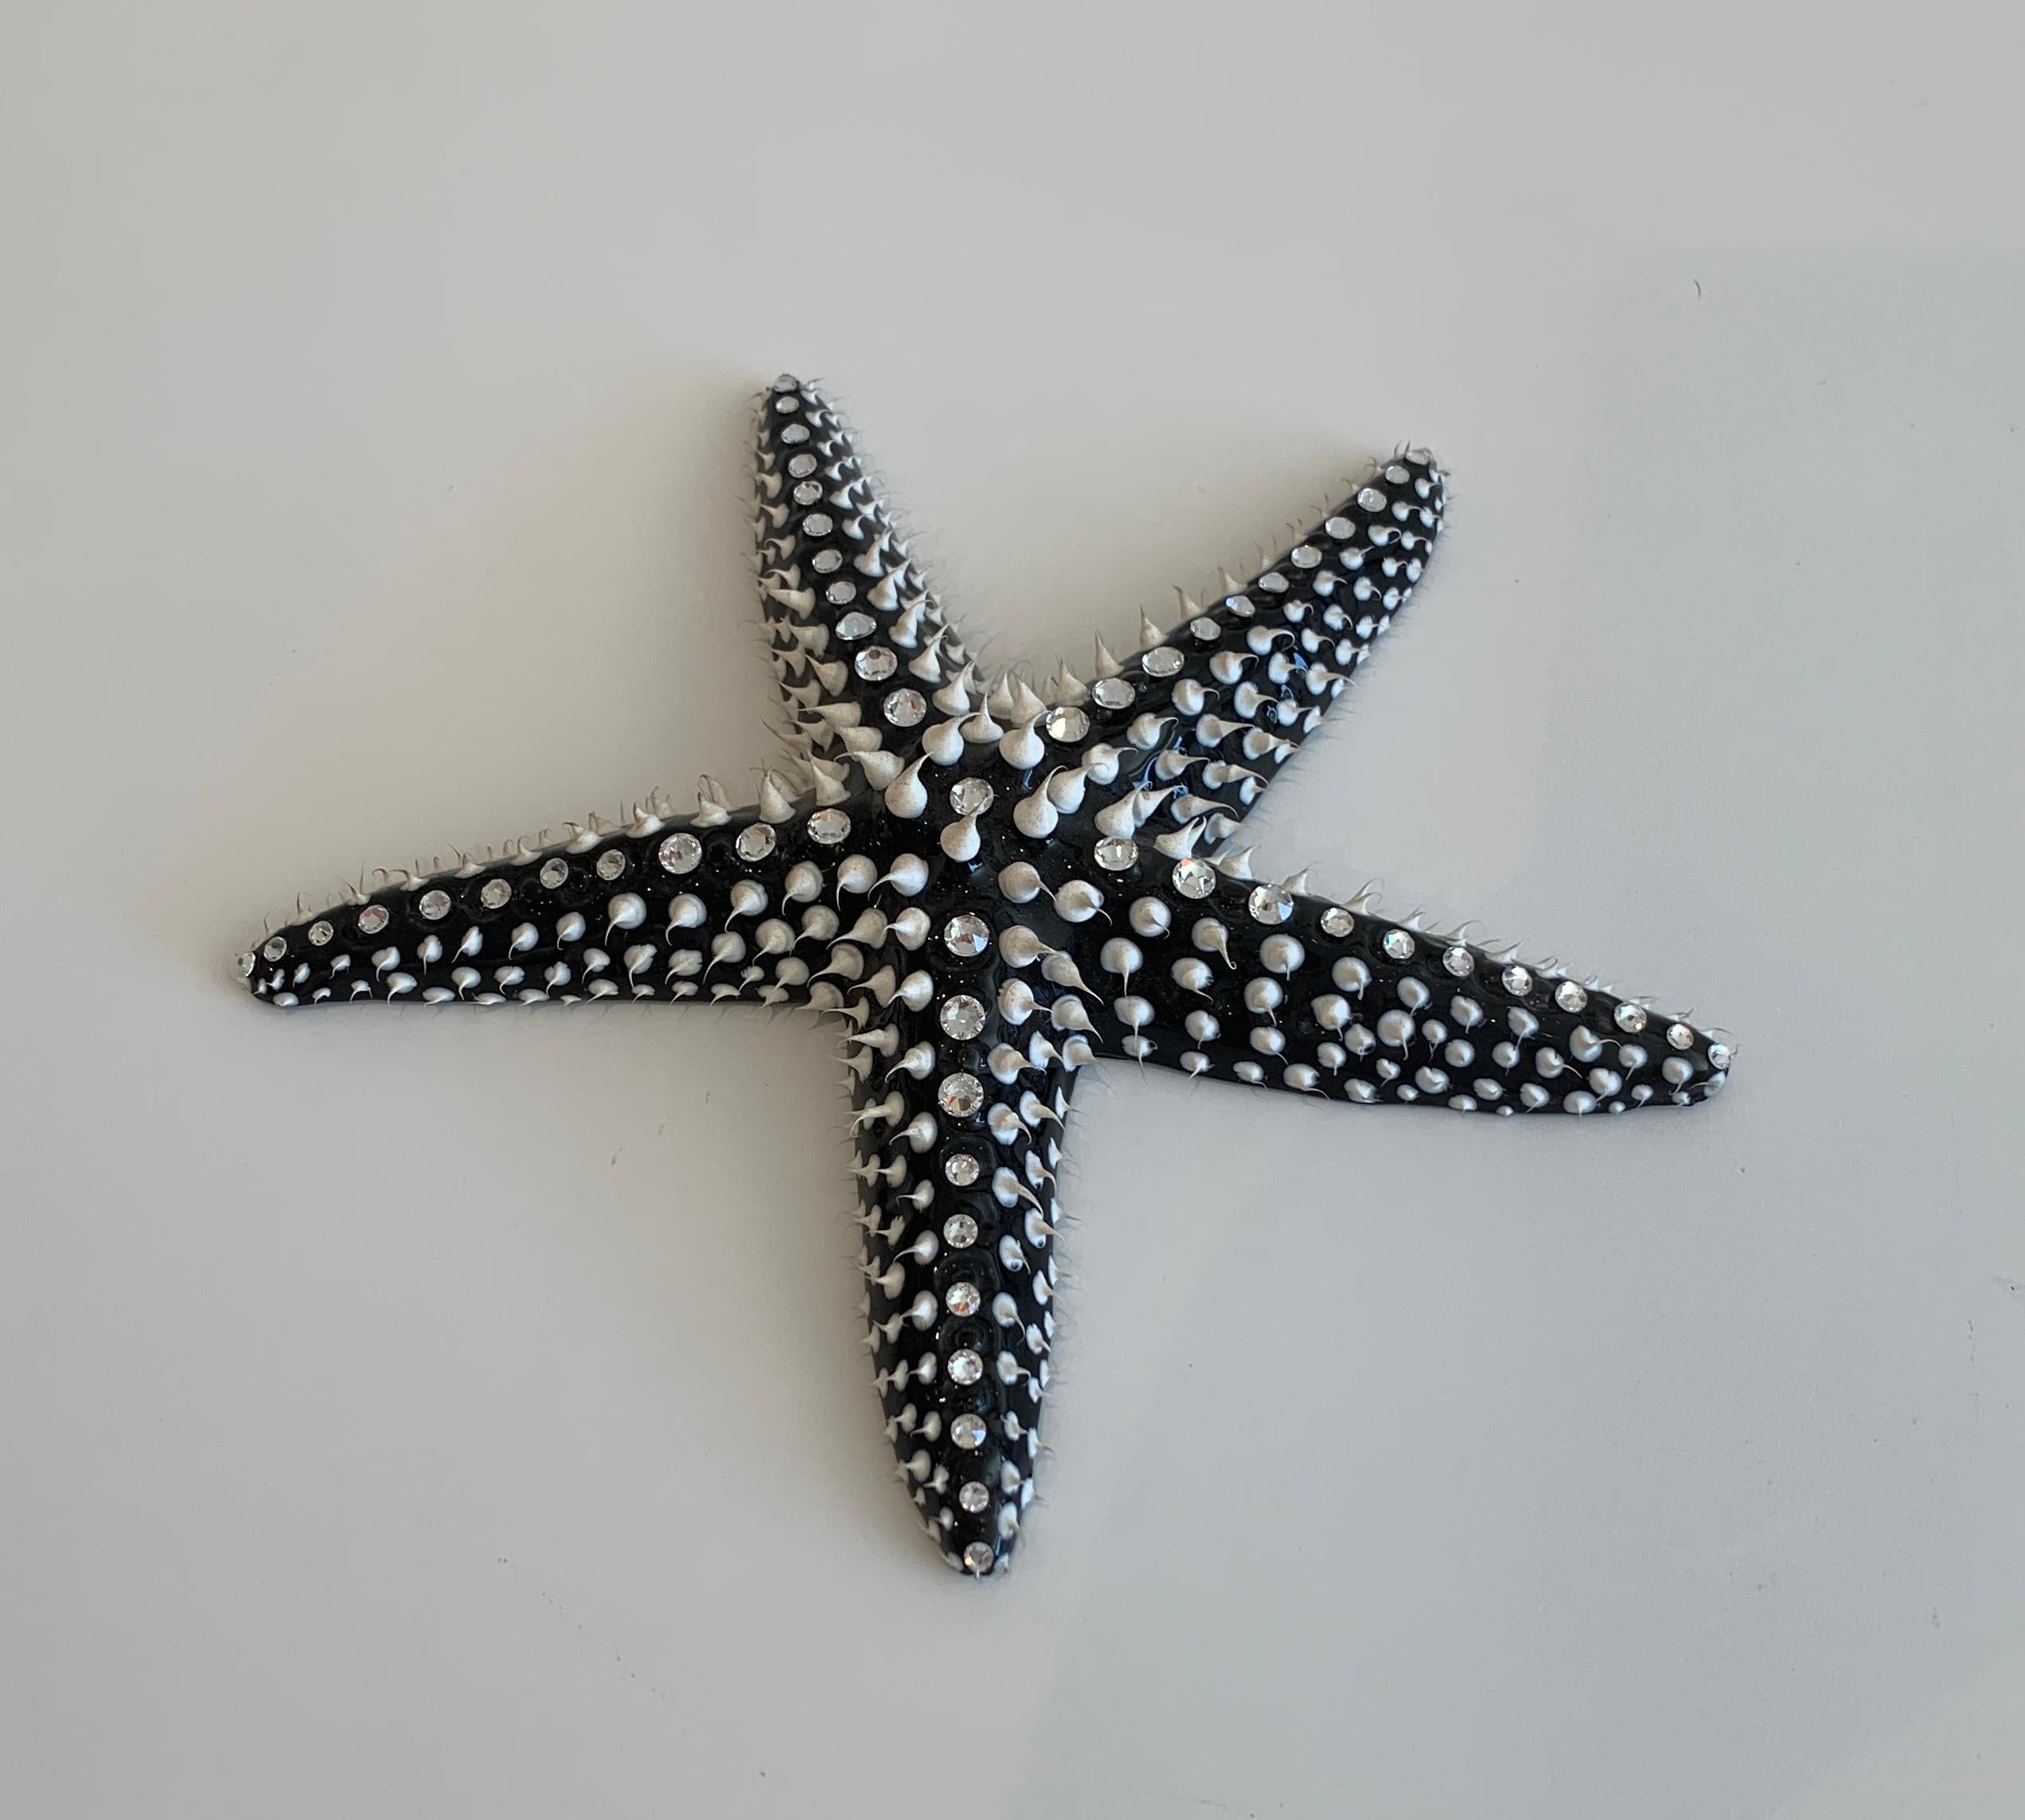 Eddy Maniez Figurative Sculpture - Eddie Maniez "Starfish Large" Sculpture French Ceramic Silicone Black Swarovski